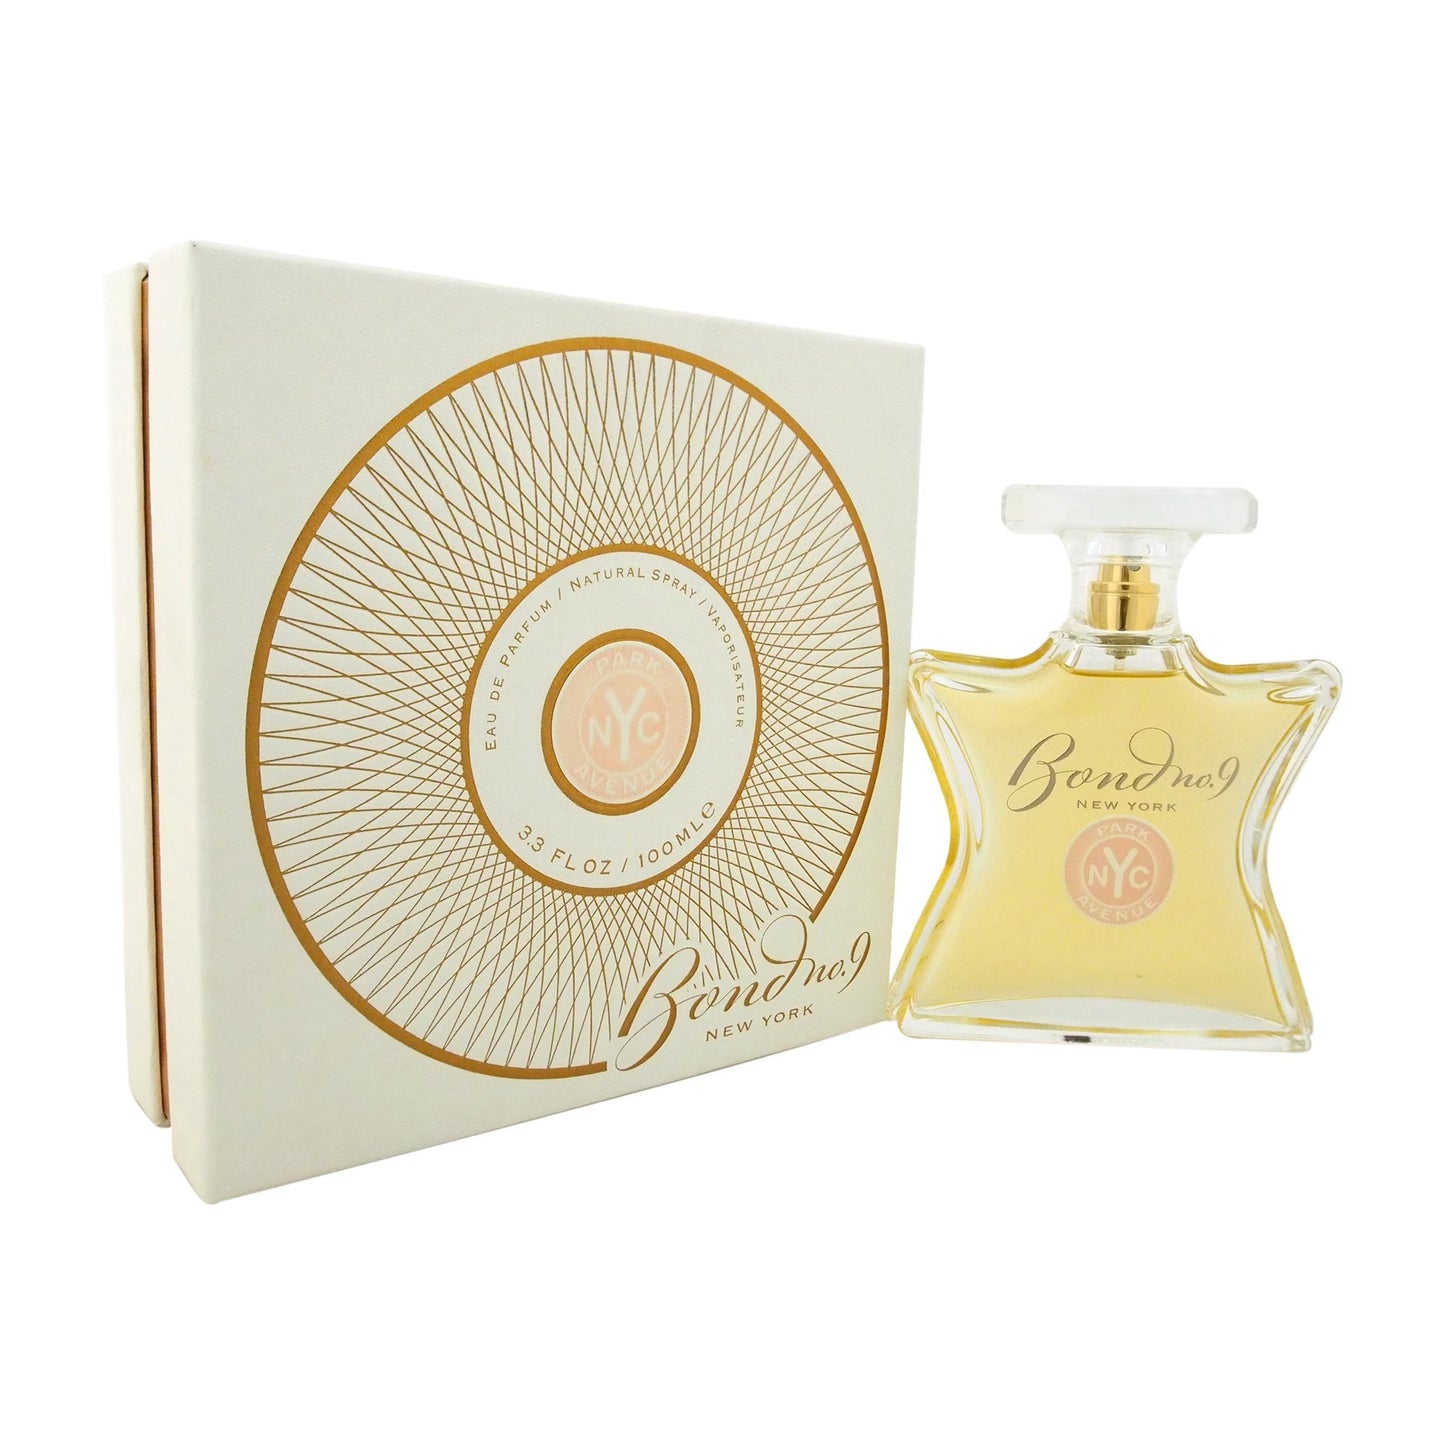 Bond No. 9 Park Avenue by Bond No. 9 Women 3.4 oz Eau de Parfum Spray | FragranceBaba.com